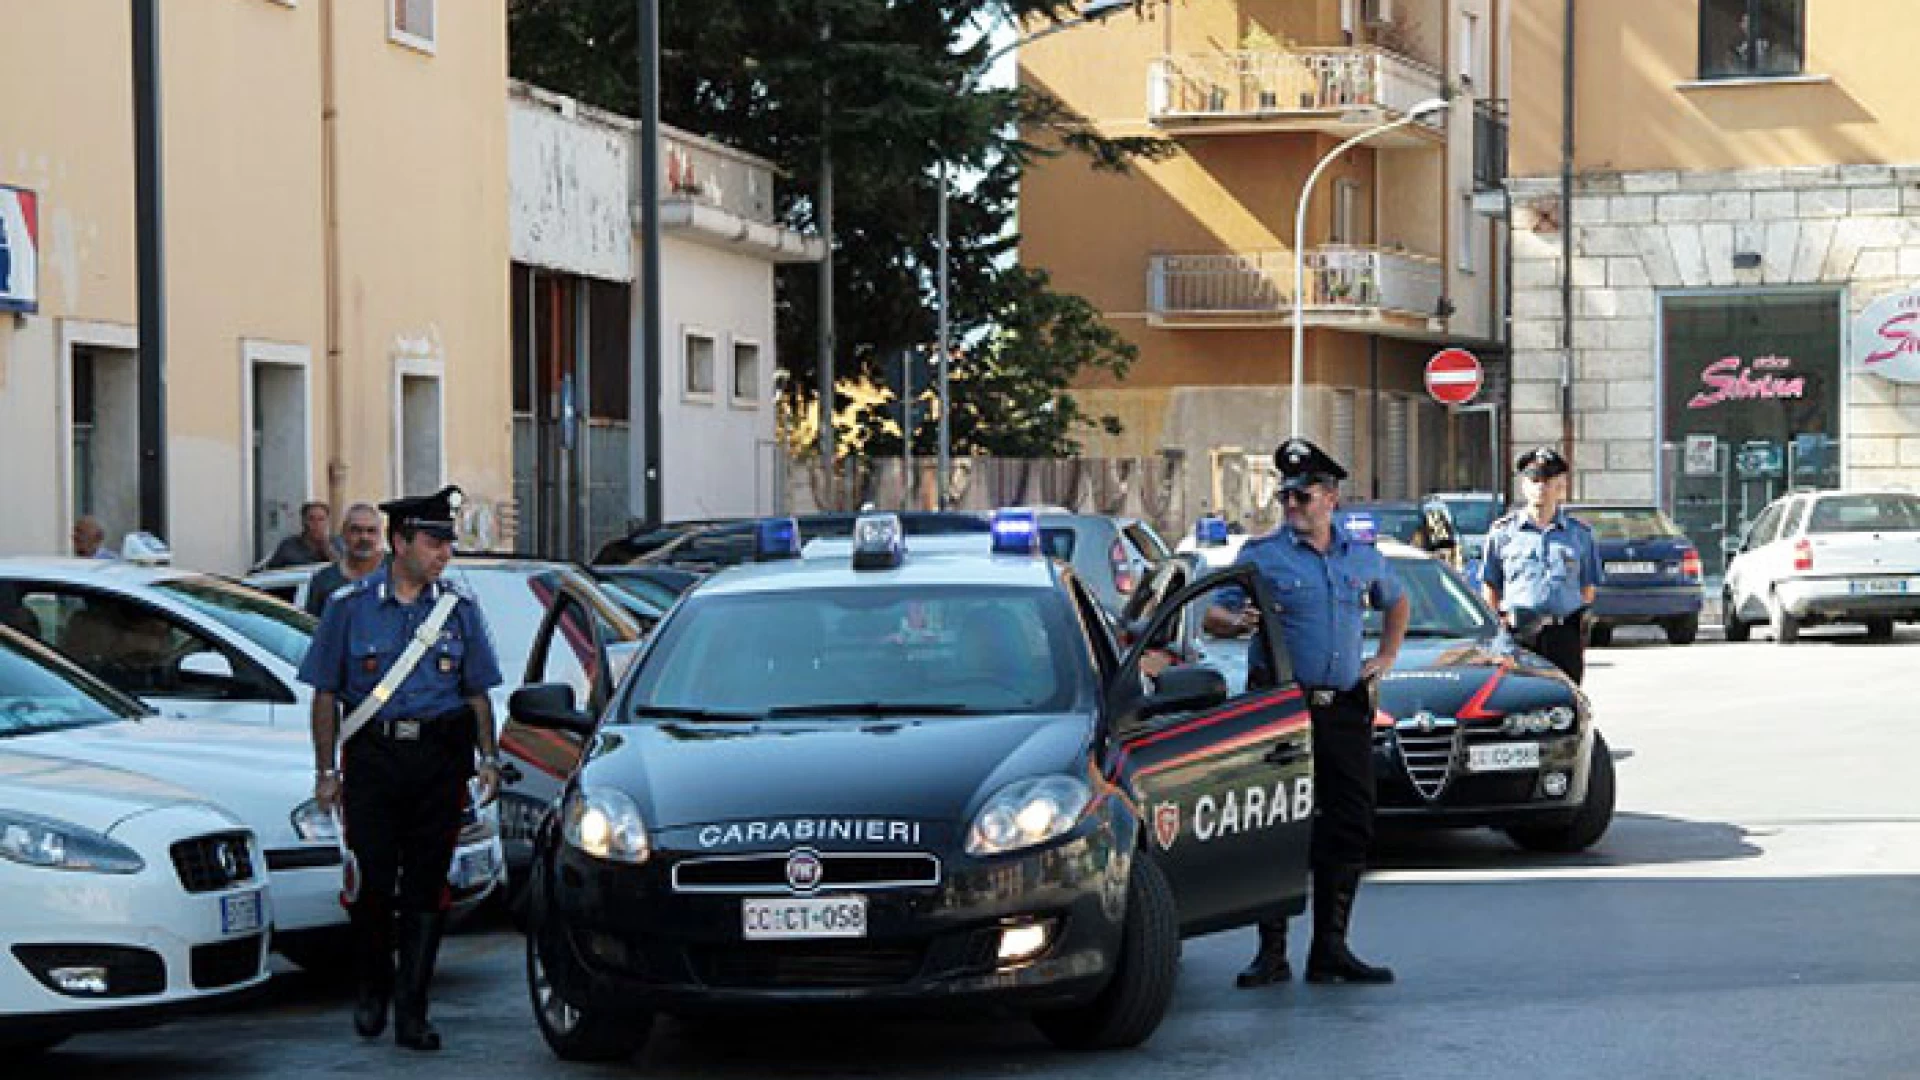 Venafro: minacciano di morte una pattuglia dei Carabinieri. Denunciati un 40 ed un 18 enne del posto. Controlli straordinari dei Carabinieri sul territorio.